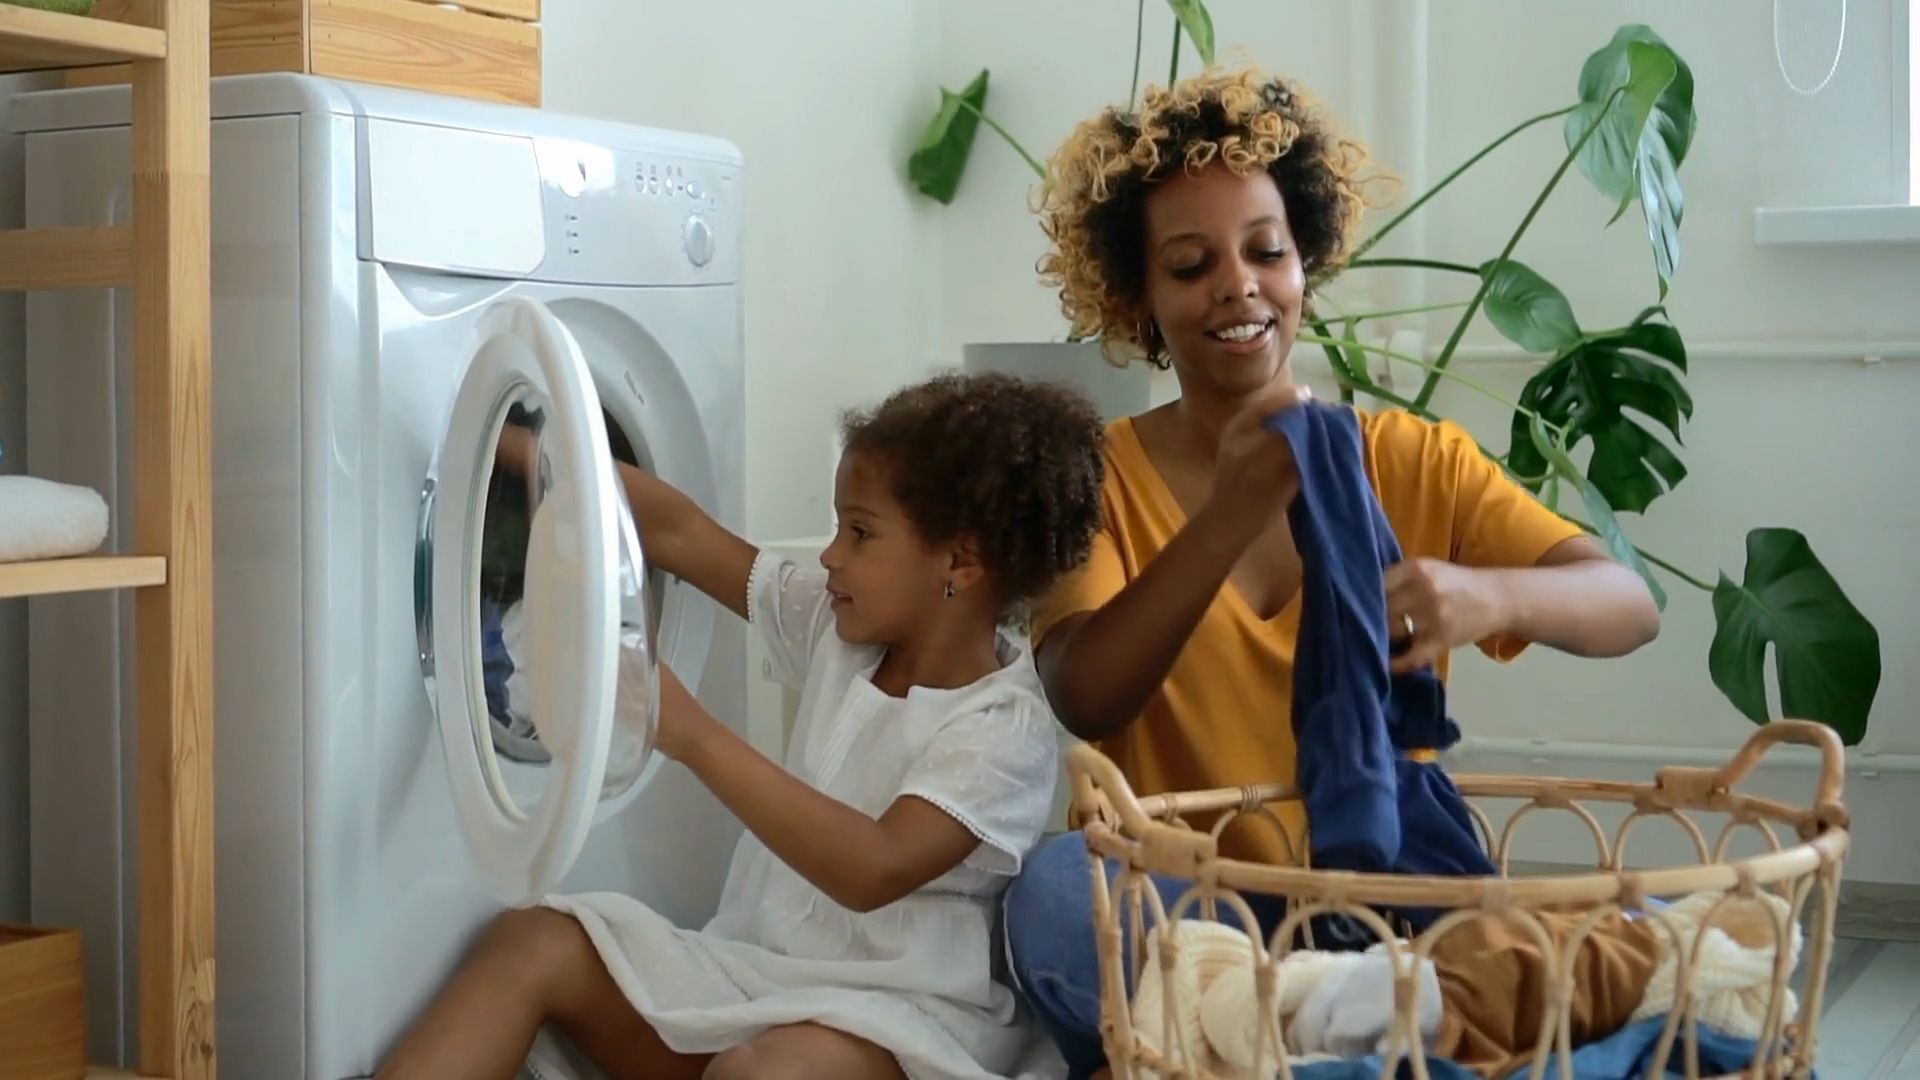 Clever Wäsche waschen: So schonst du Geldbeutel und Umwelt